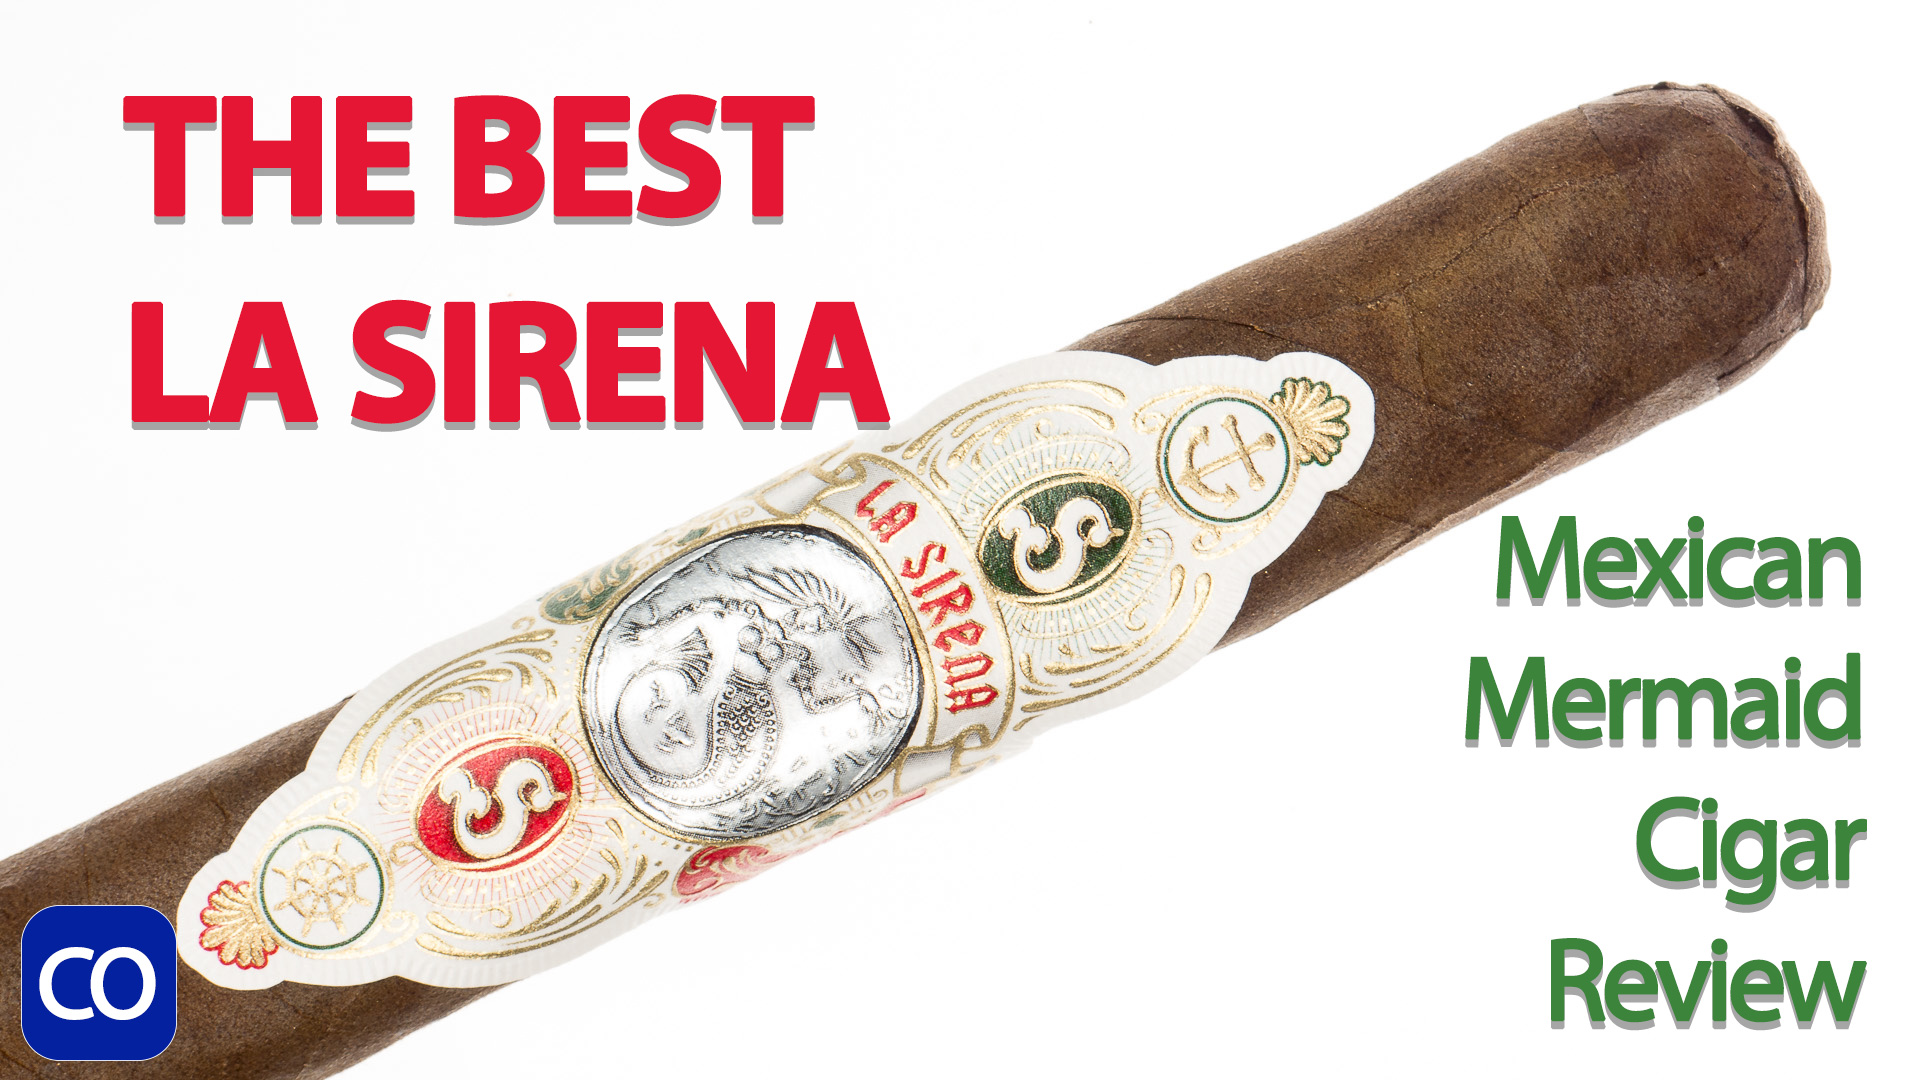 La Sirena Mexican Mermaid Toro Cigar Review